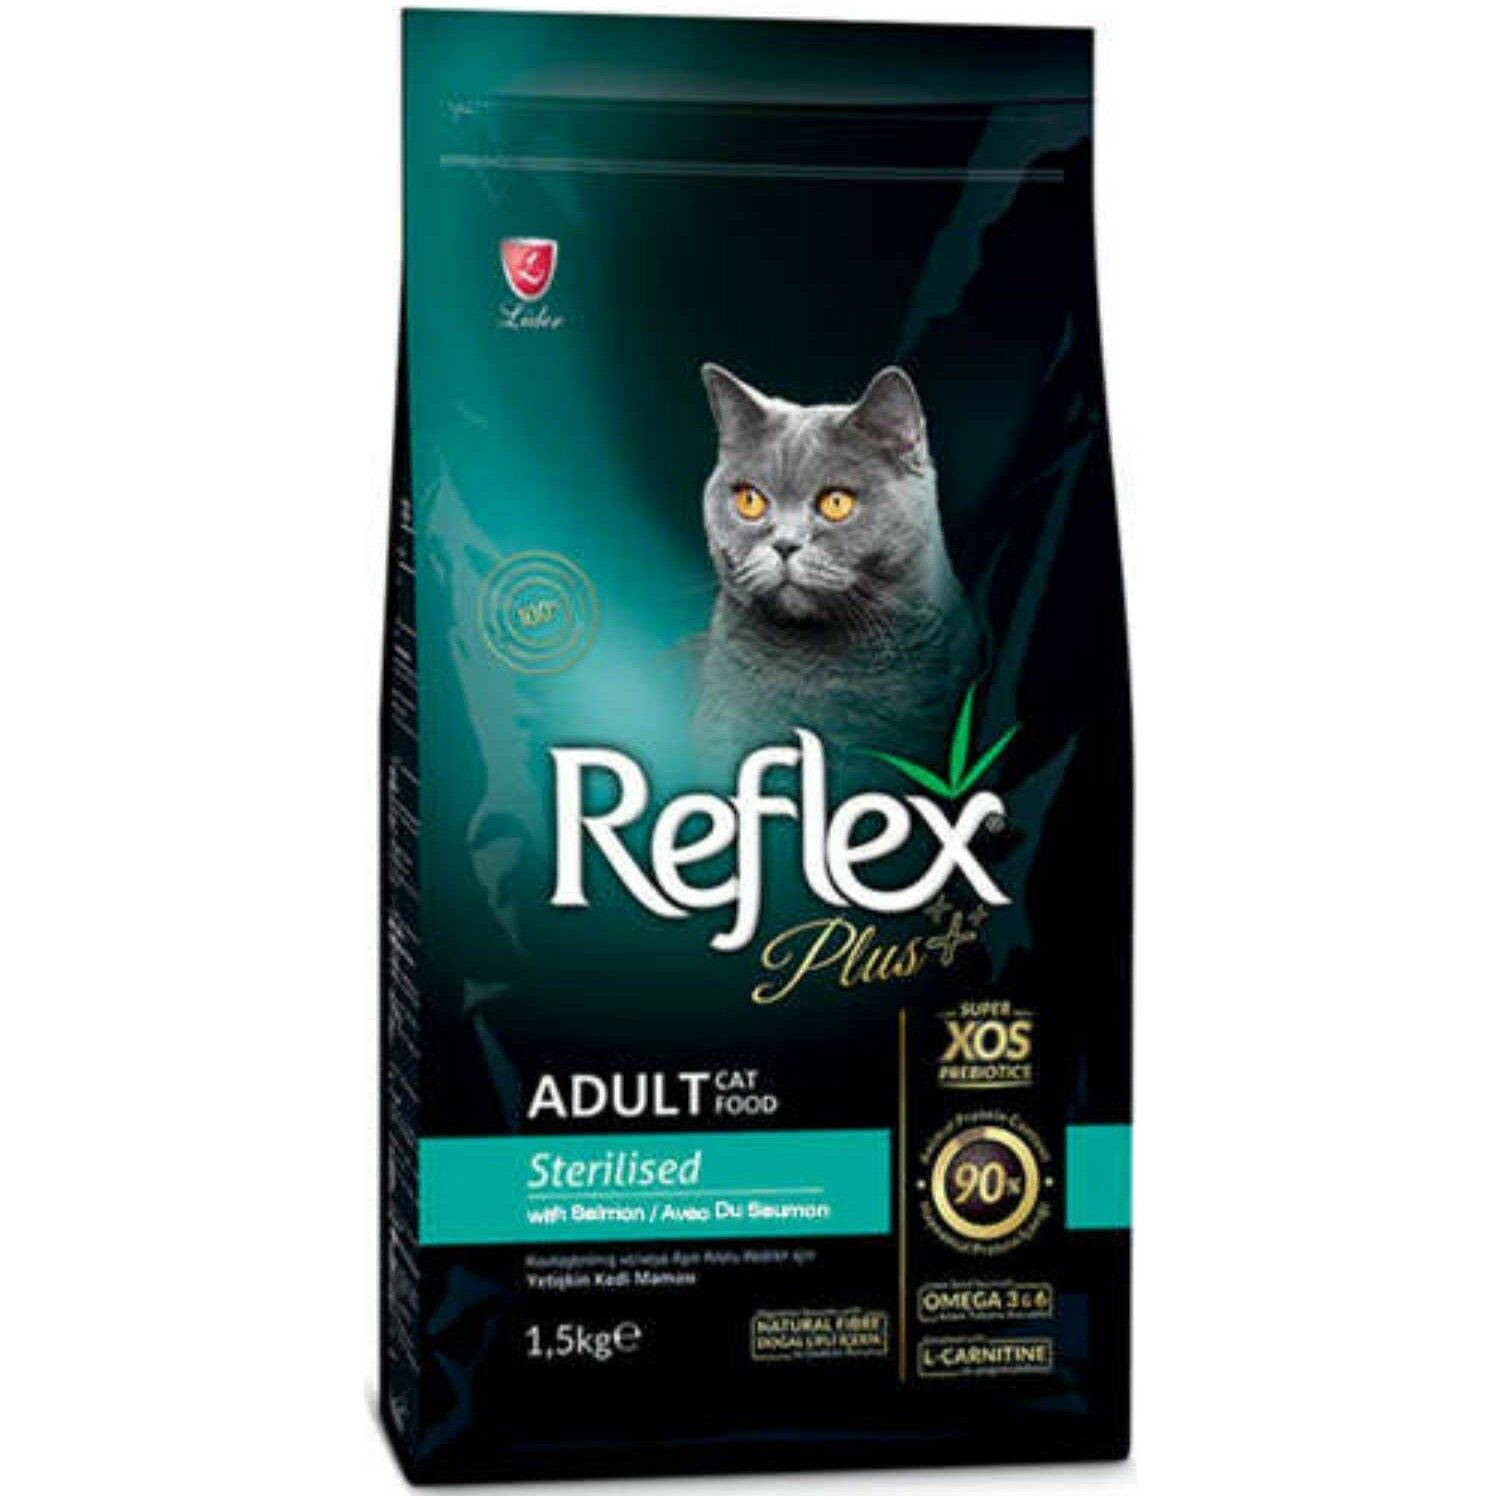 Reflex Plus Somonlu Kısırlaştırılmış Kedi Maması 1.5kg